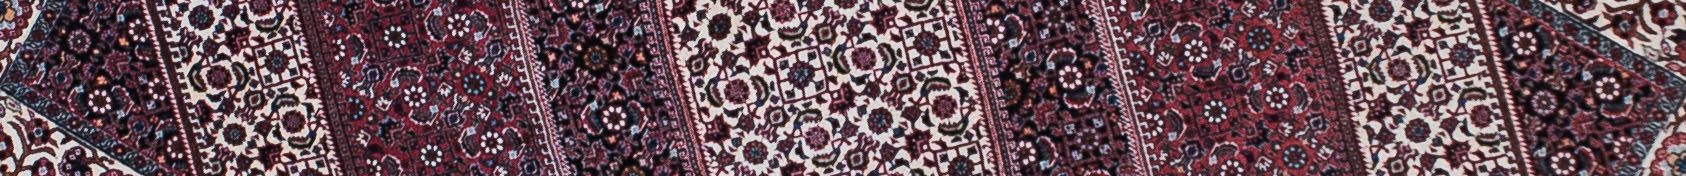 Bidjar Persian Carpet Rug N1Carpet Canada Montreal Tapis Persan 2756